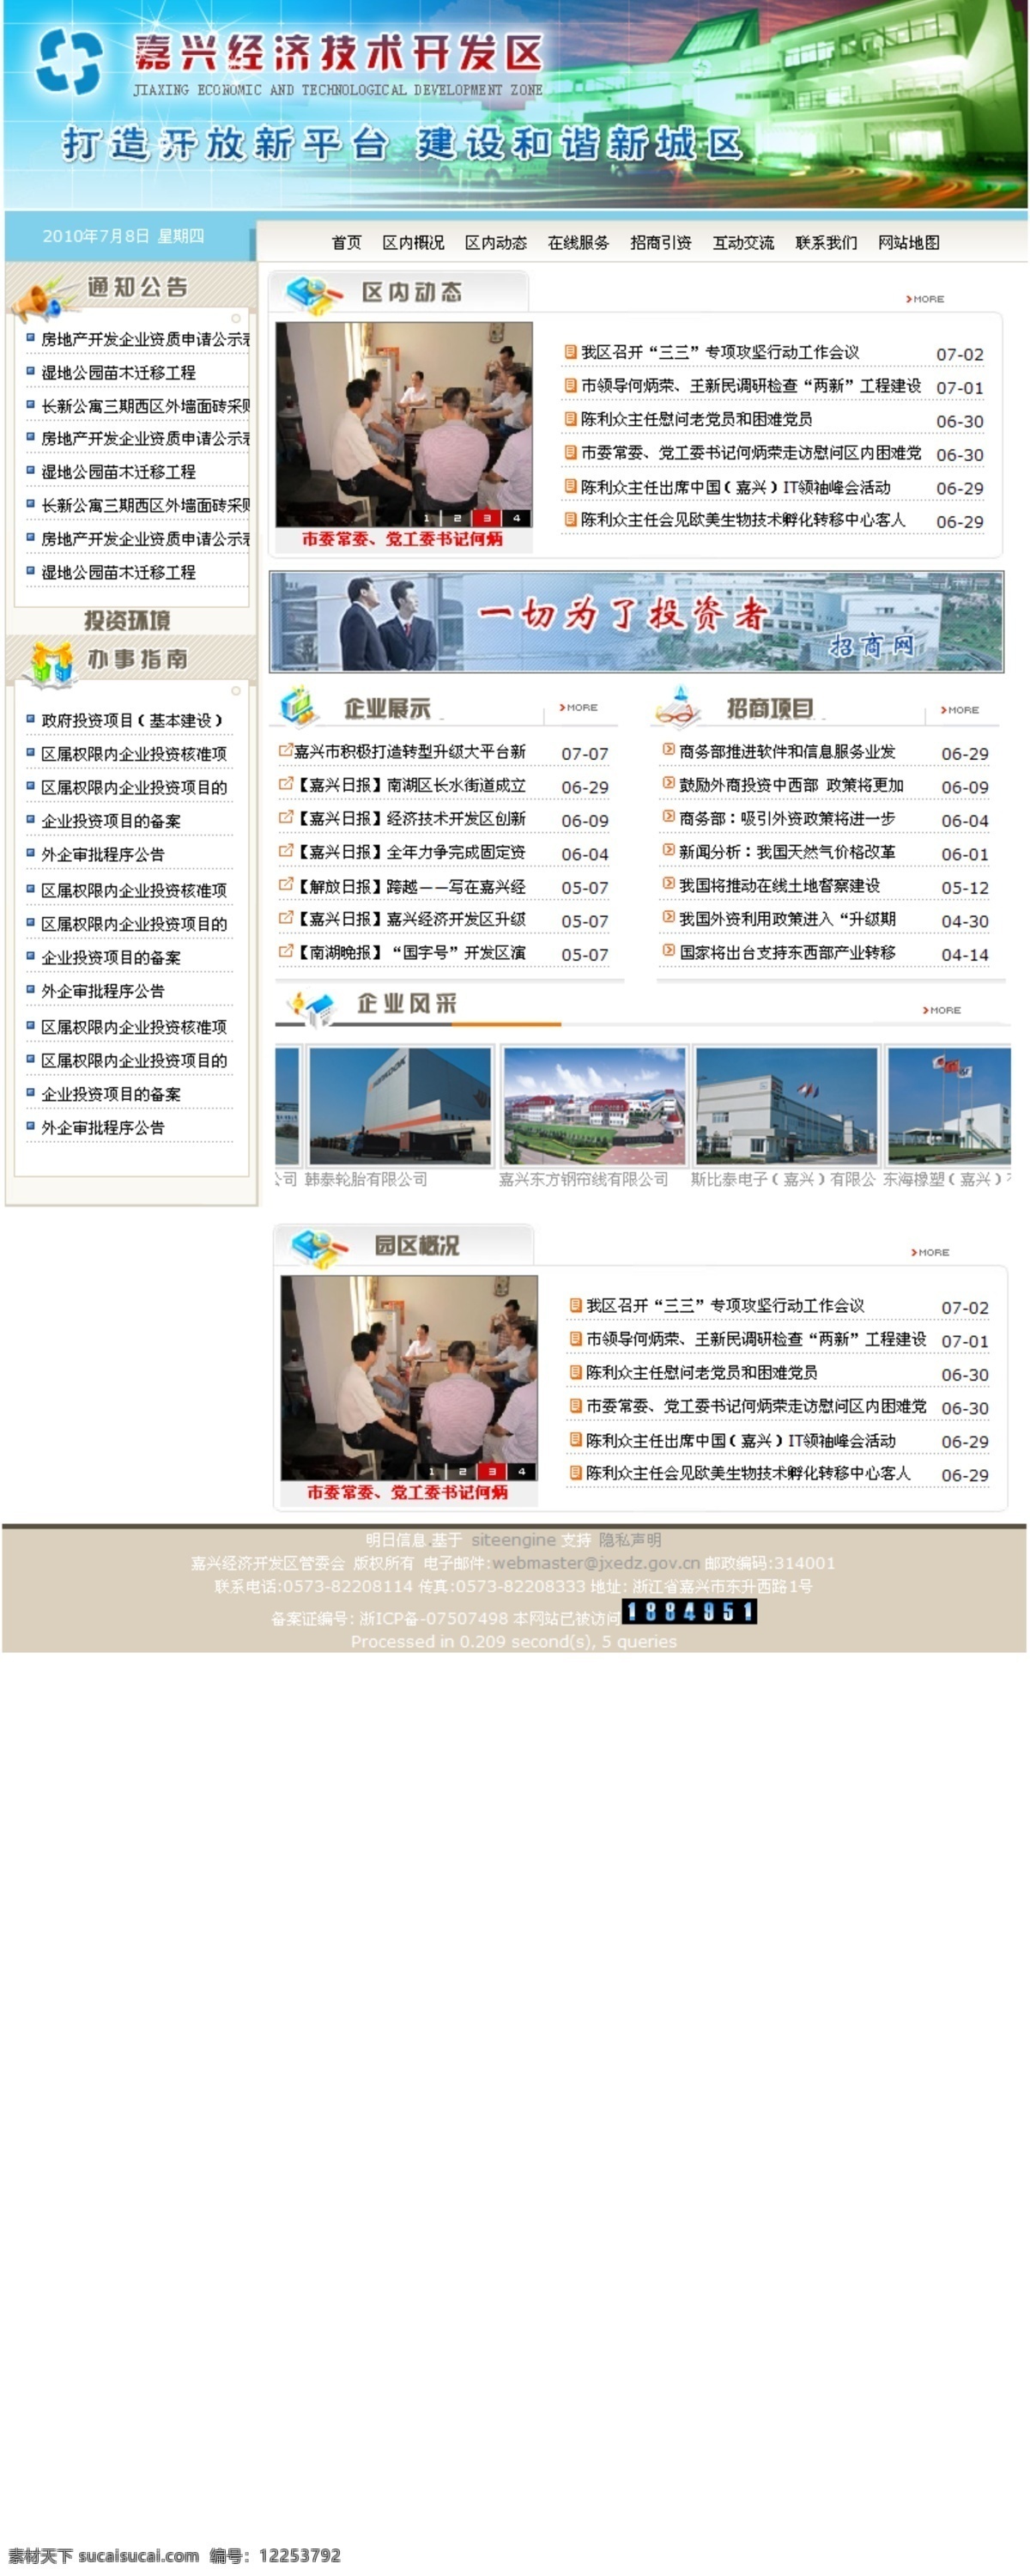 banner 版式设计 网页模板 网页设计 源文件 中文模板 中文模版 企业 园区 园区网页 网页素材